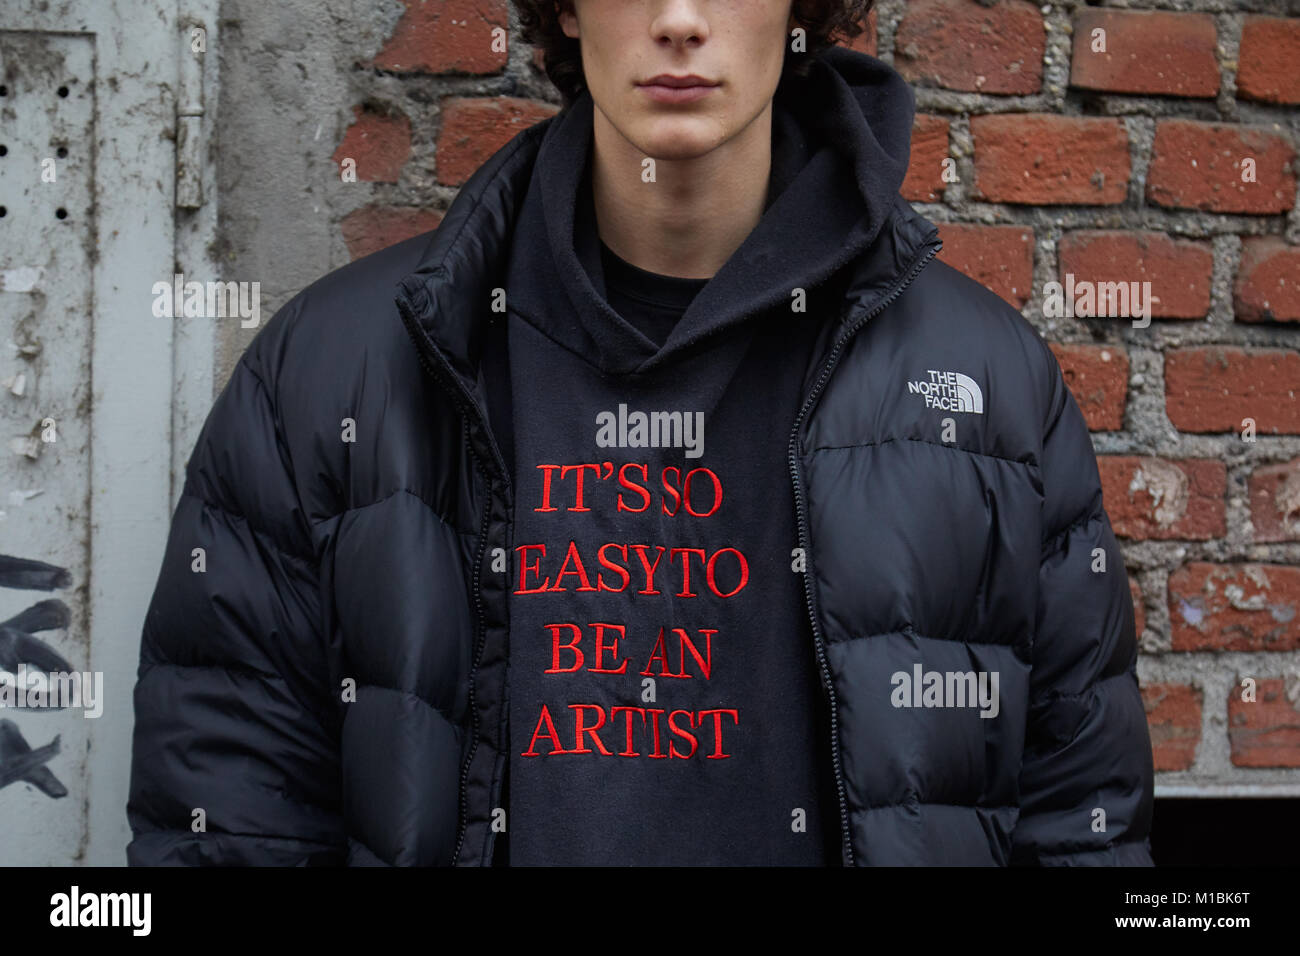 Mailand - Januar 15: Mann mit schwarzen The North Face gefütterte Jacke und Kapuze mit 'Es ist so einfach, ein Künstler das Motto vor Fendi fashion show, Mailand. Stockfoto